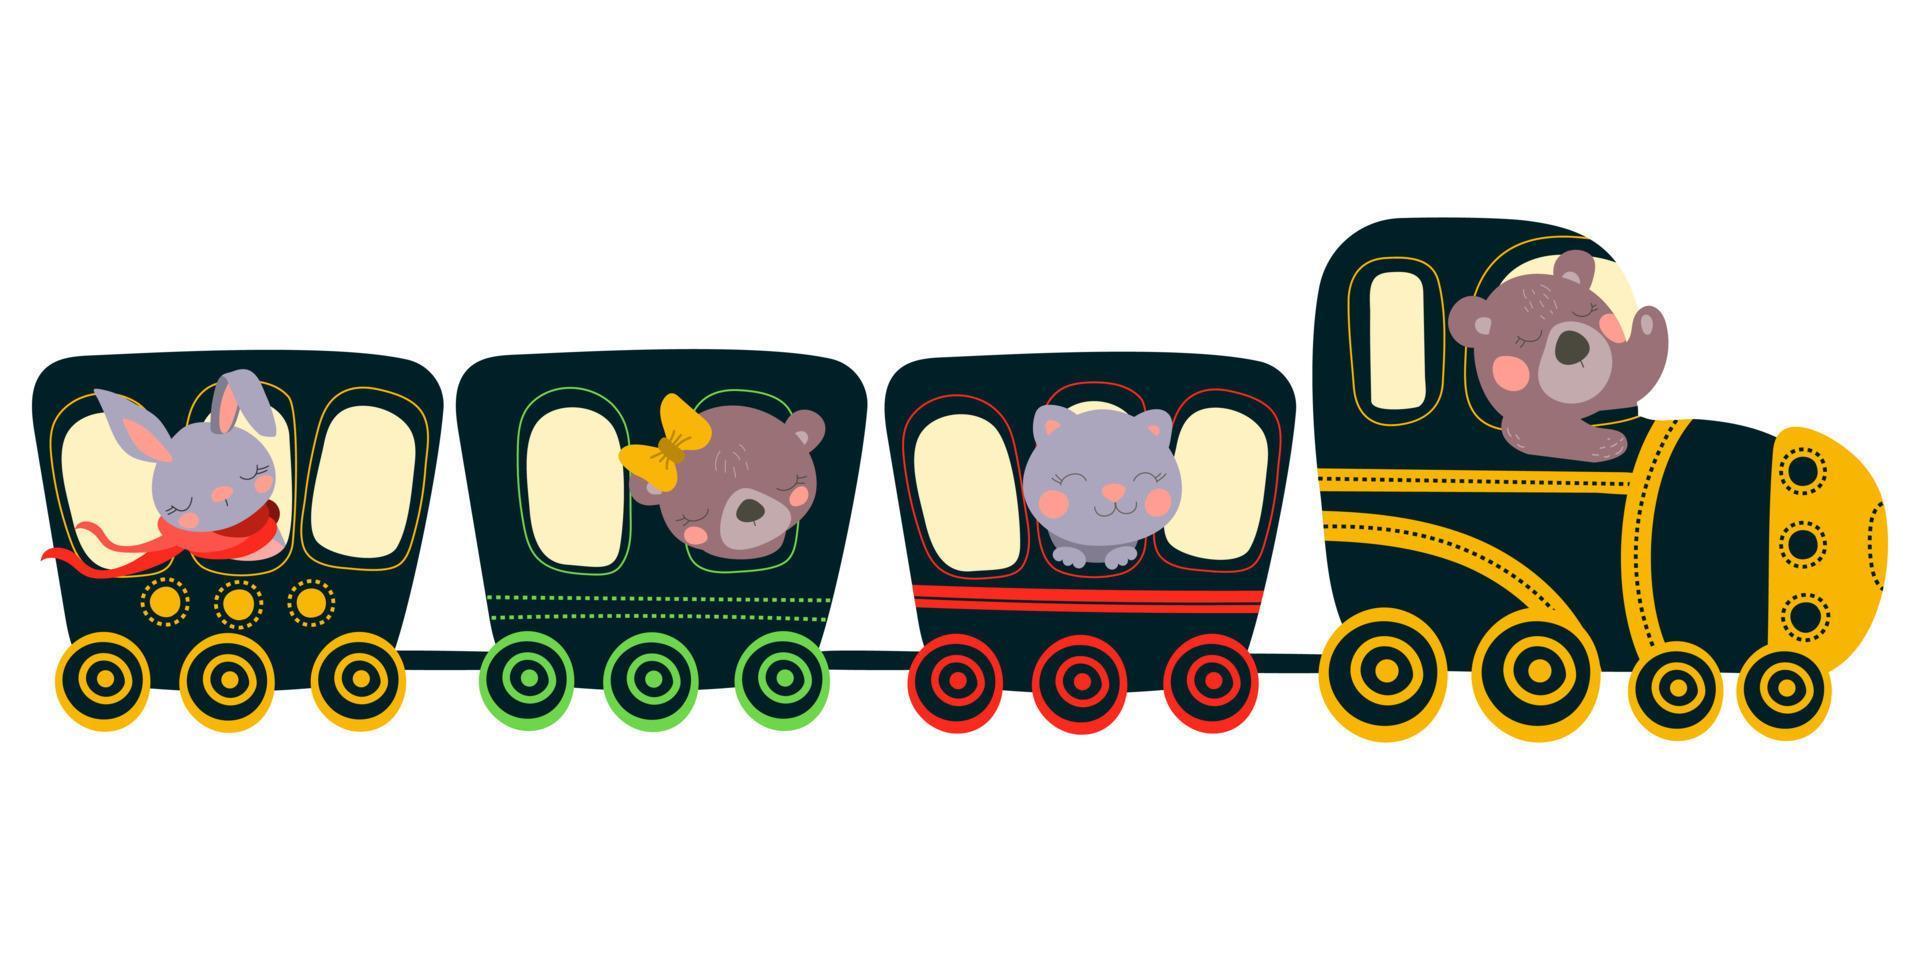 allenarsi con animali in stile cartone animato. la lepre, l'orso e il gatto prendono il treno. Illustrazione vettoriale su sfondo bianco. disegno a mano. per la stampa, il web design.